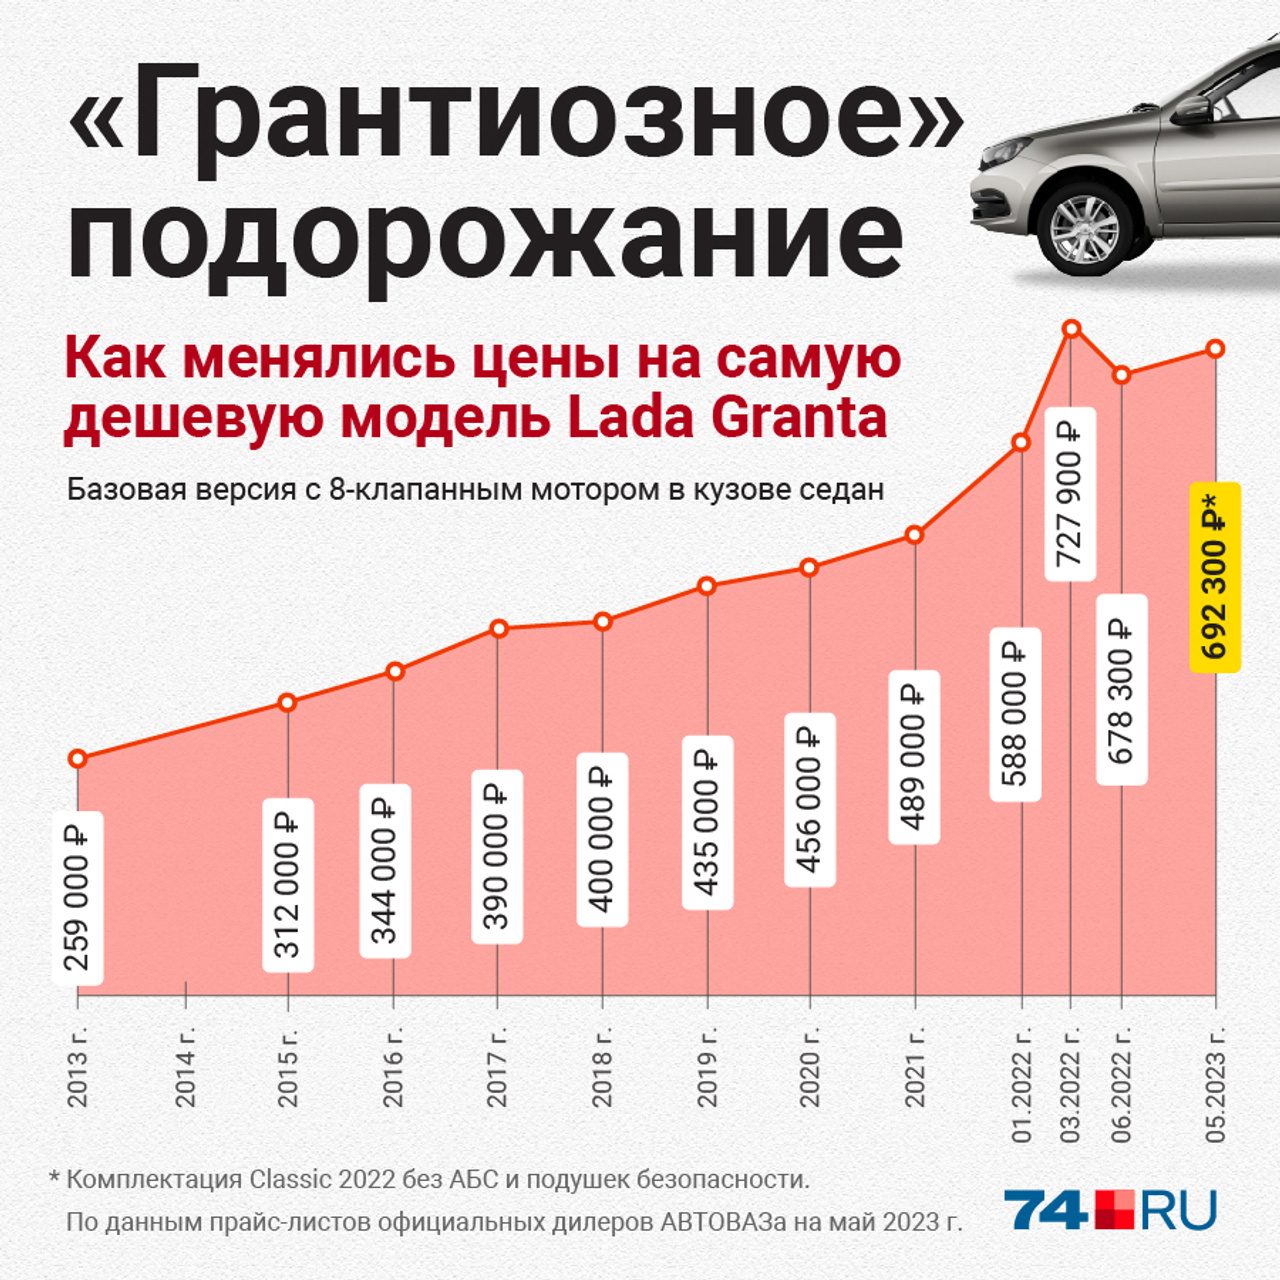 А вот как менялась стоимость Lada Granta за последние десять лет